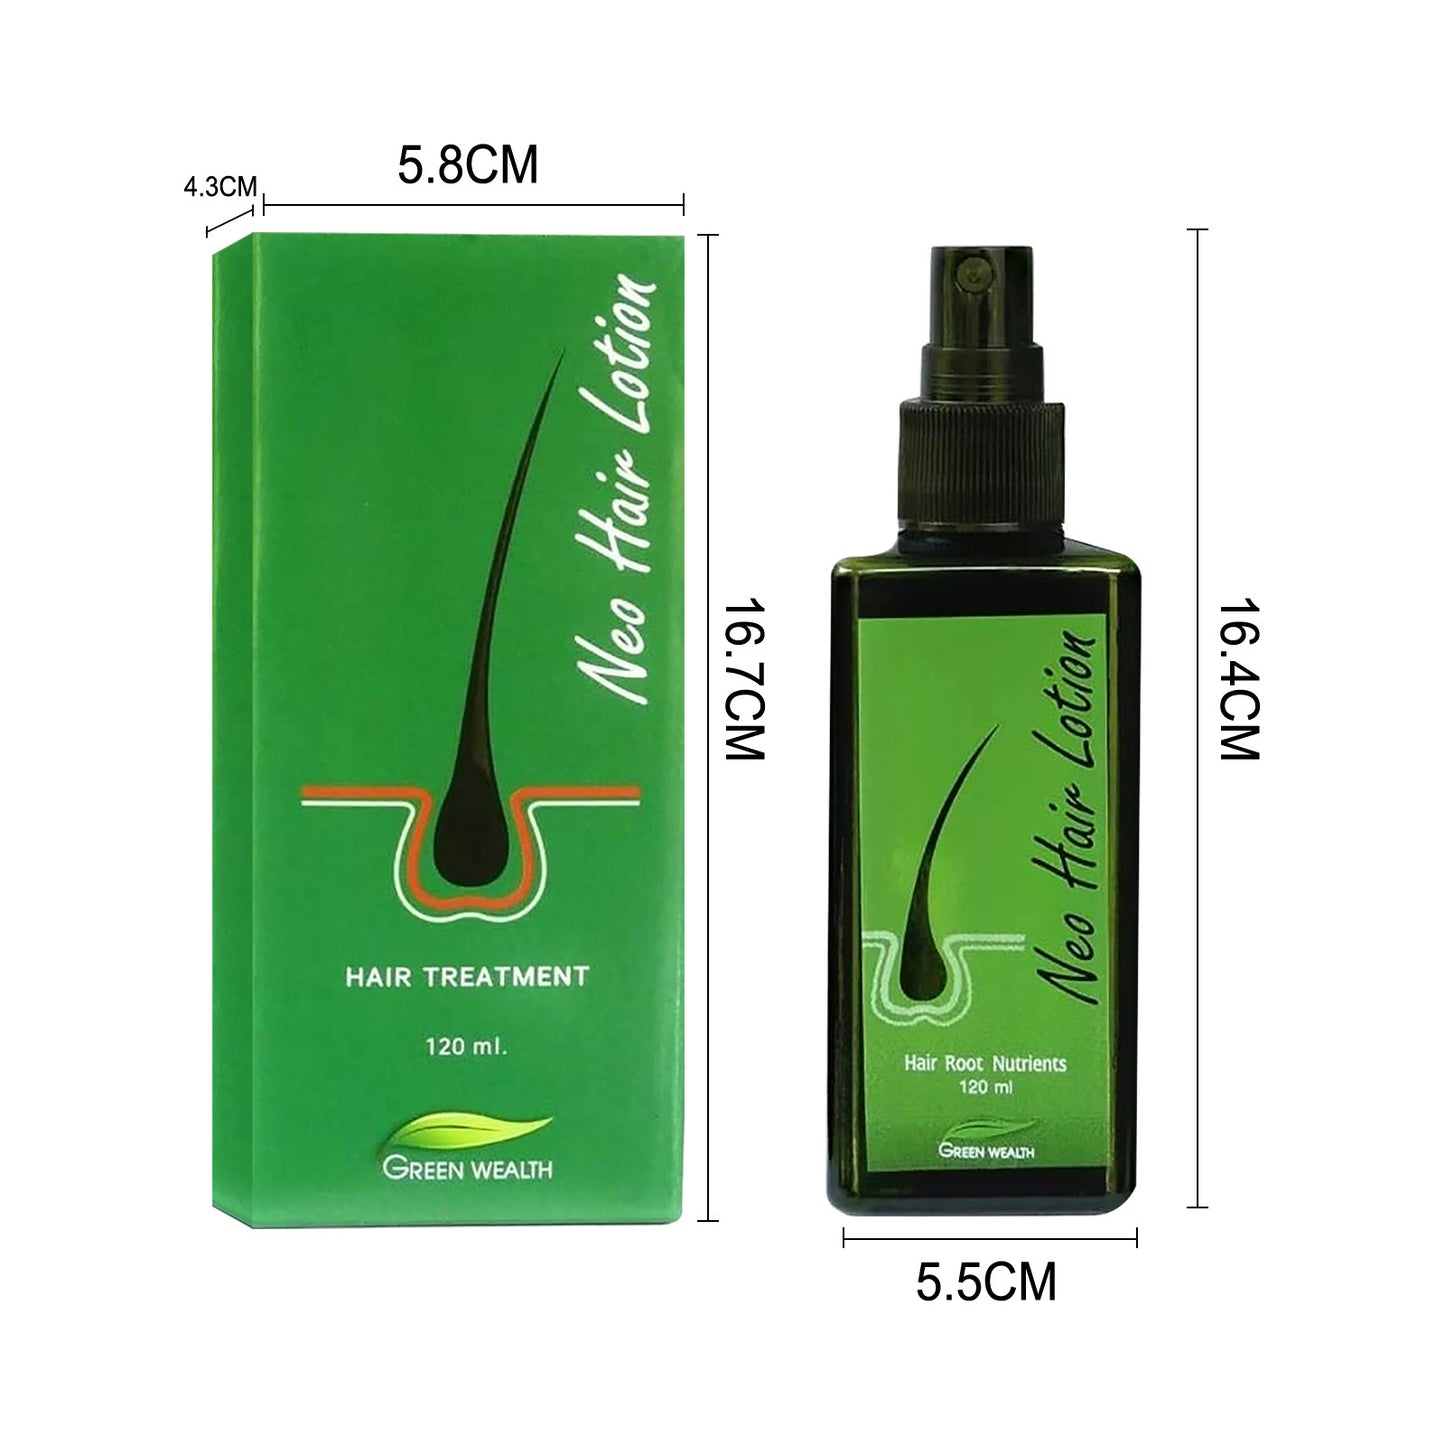 Hair Care Growth Lotion Spray